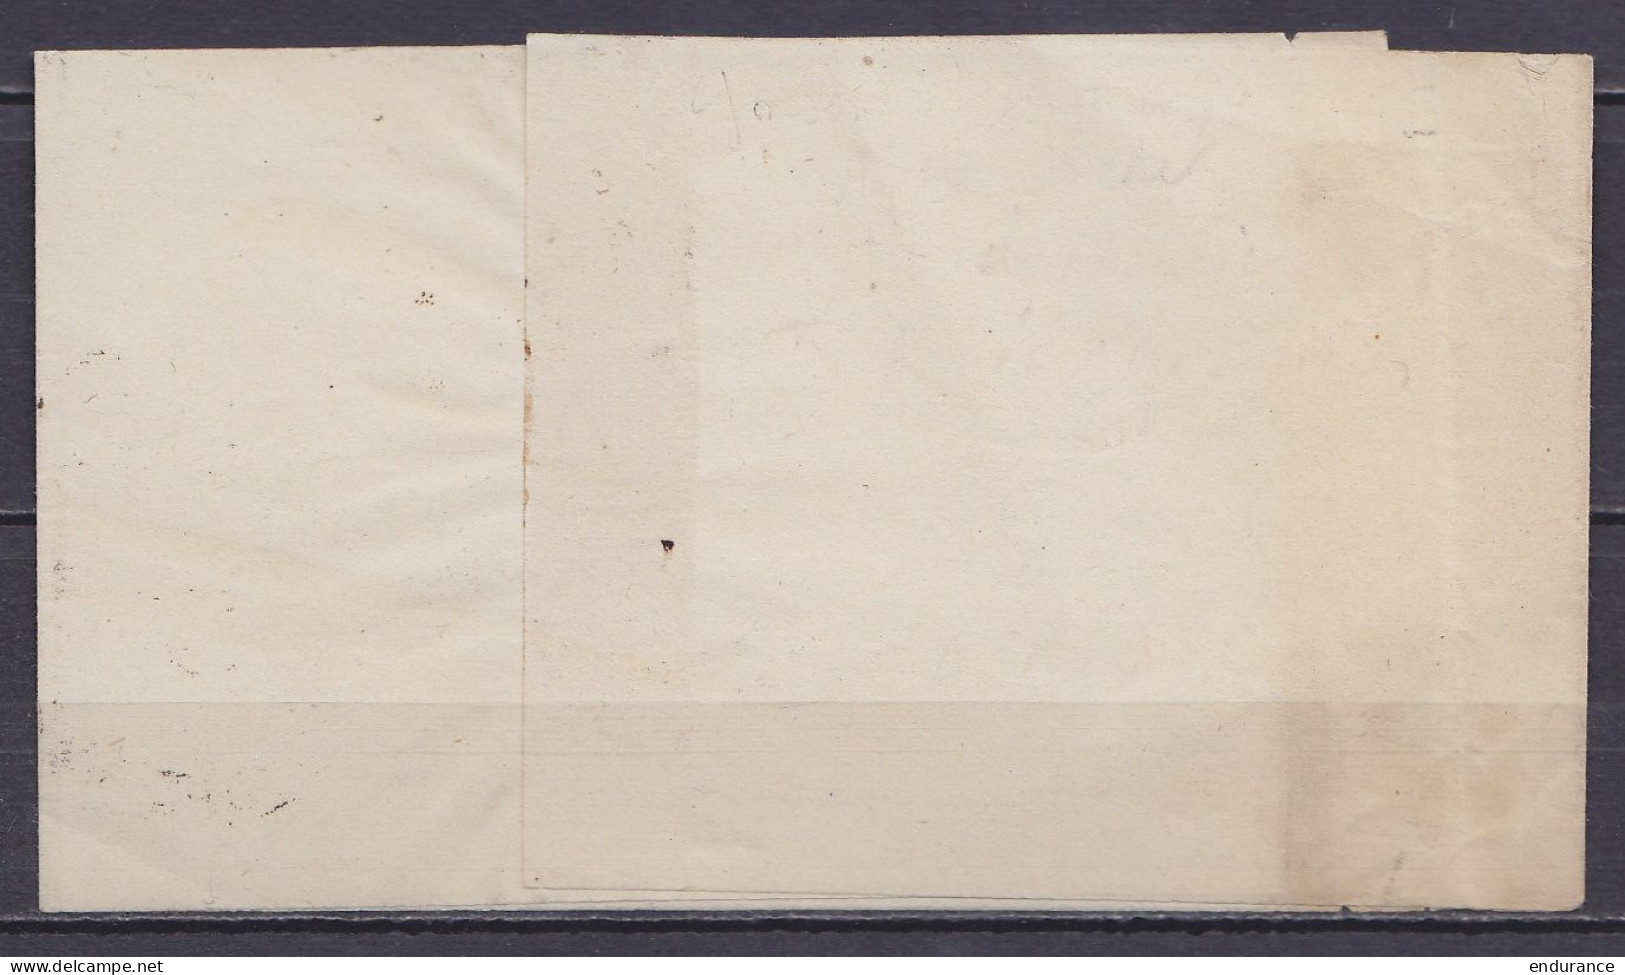 Très Rare Cachet à Hernie "PP /17 FEVR. 1869/ ST-JOSSE-TEN-NOODE (BRUXELLES) Sur Bande D'imprimé Pour ANVERS - 1 Ou 2 Pi - 1869-1883 Leopold II.